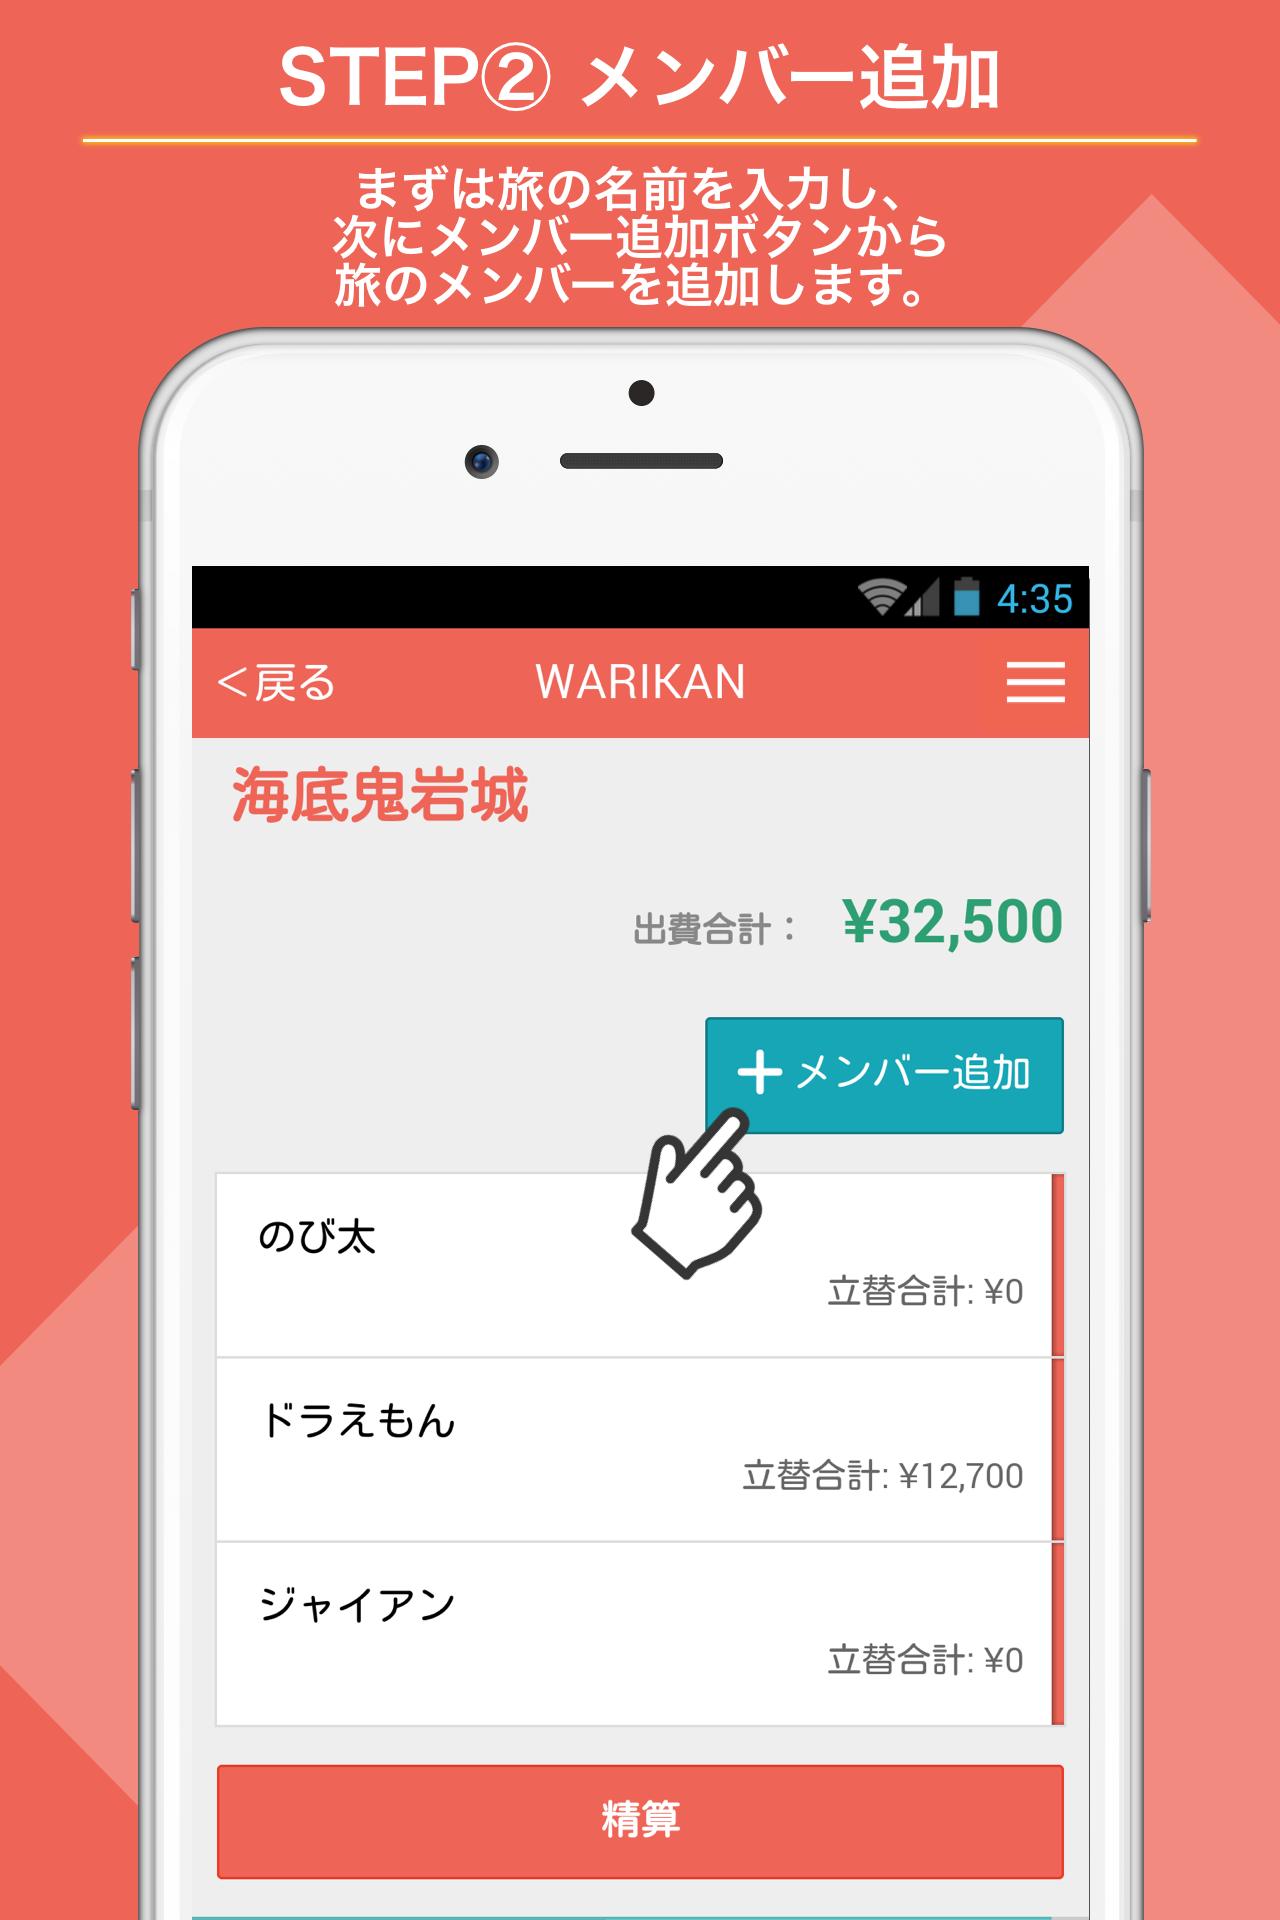 Android 用の 旅行の立替え割り勘計算アプリ Warikan Apk をダウンロード